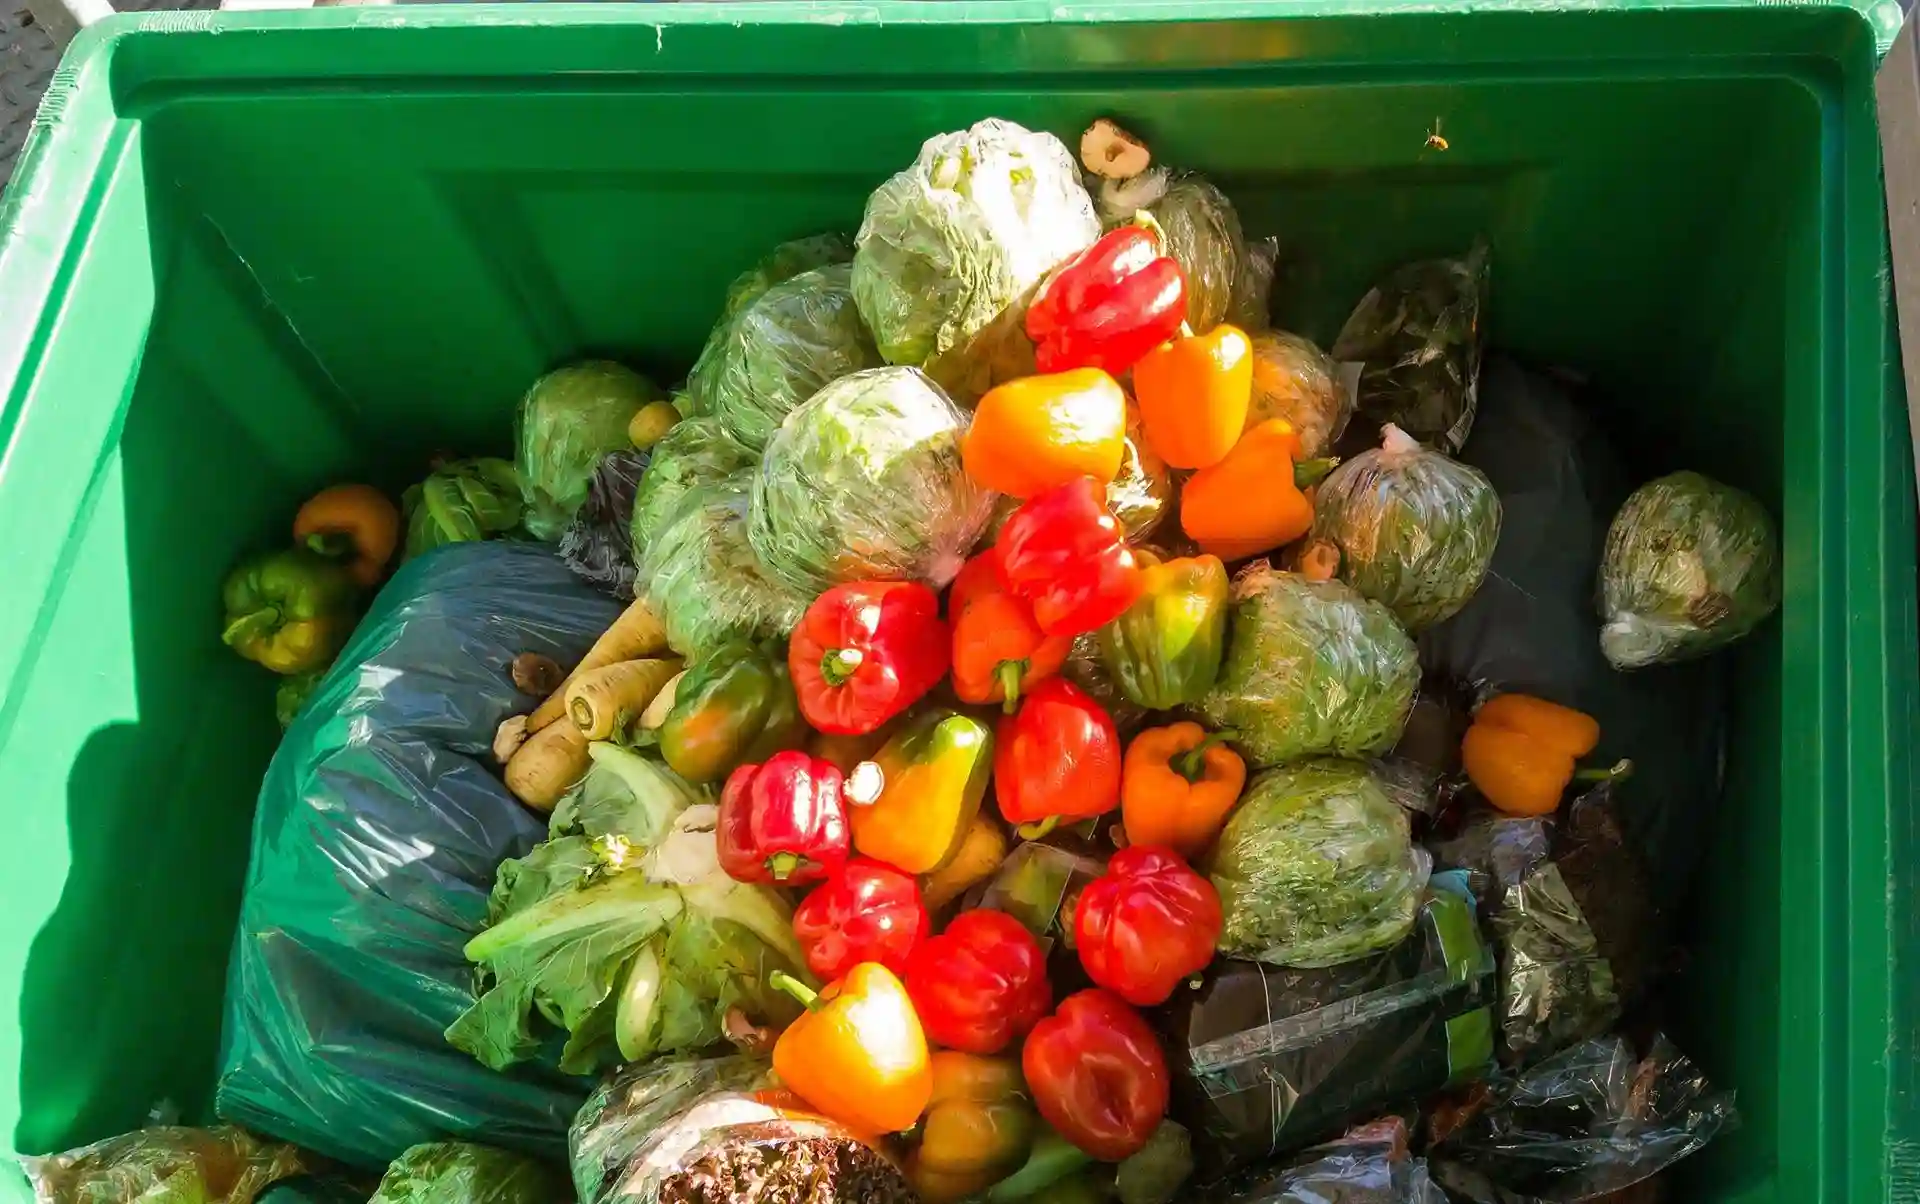 Bruselas quiere reducir el desperdicio alimentario y textil / Foto: EP